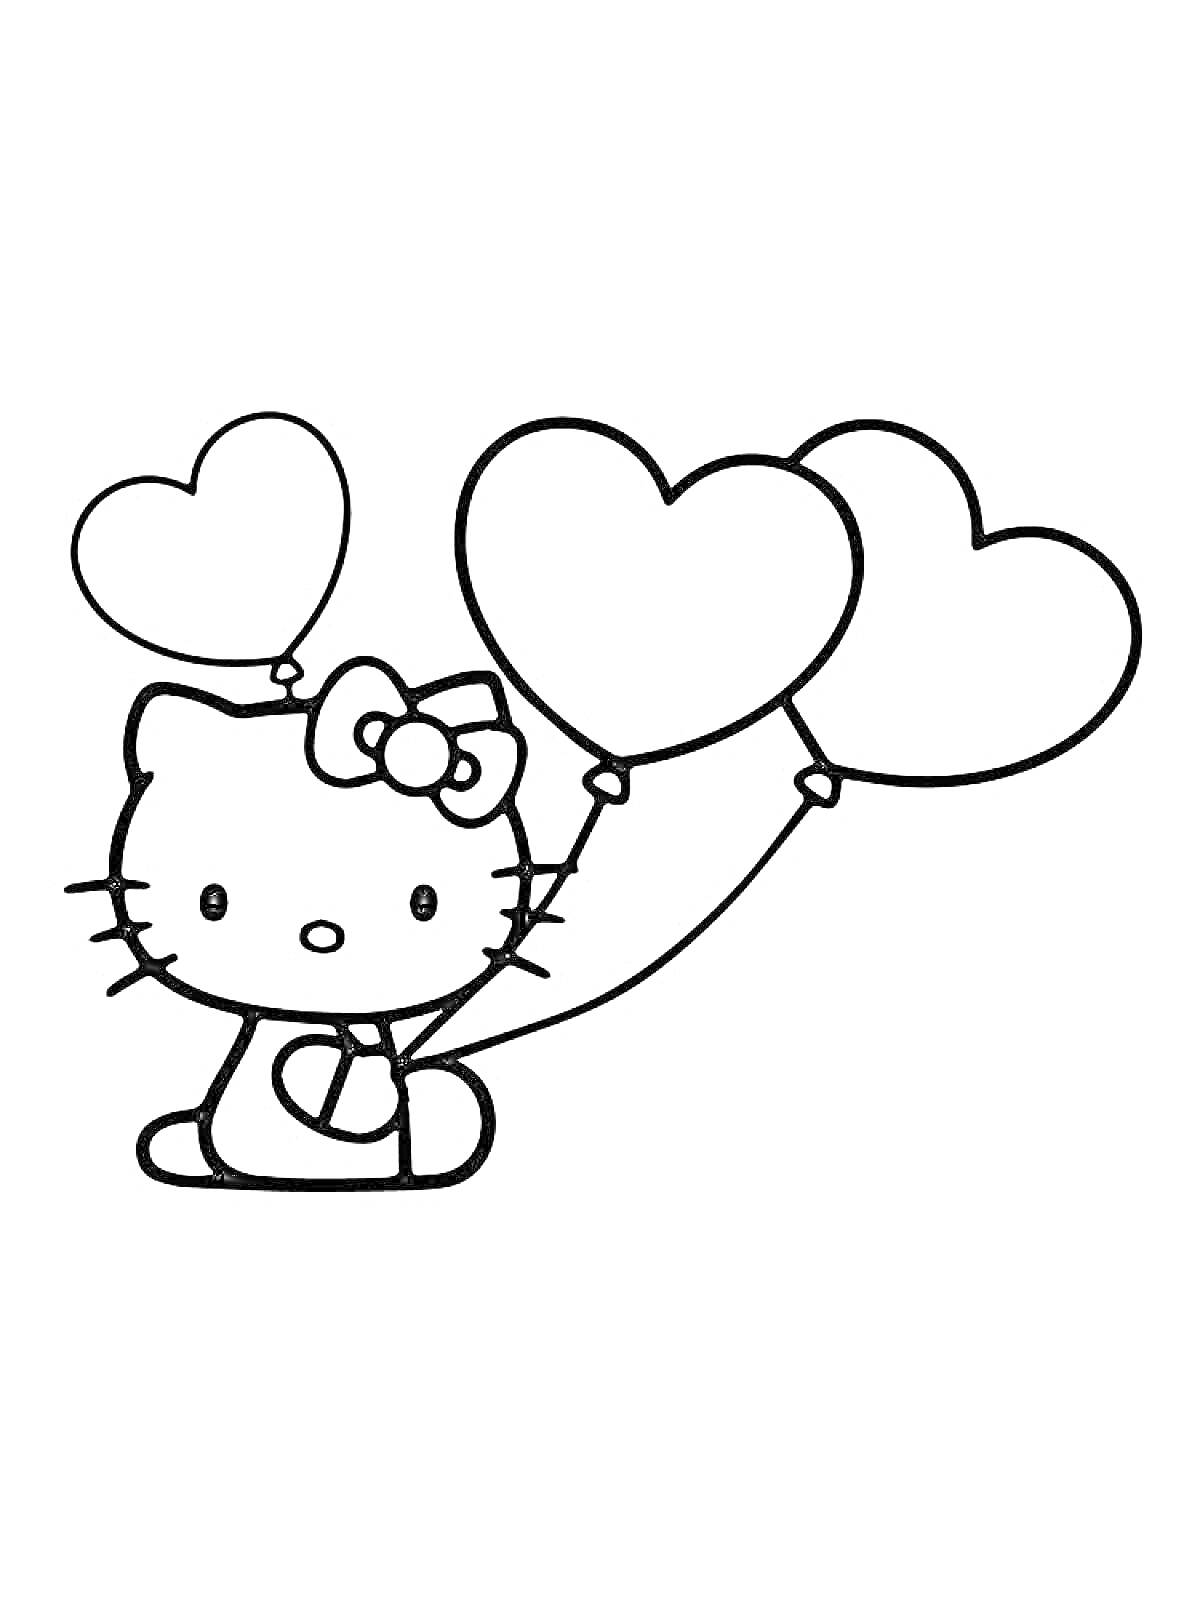 Раскраска Кошка с бантом держит три воздушных шарика в форме сердца